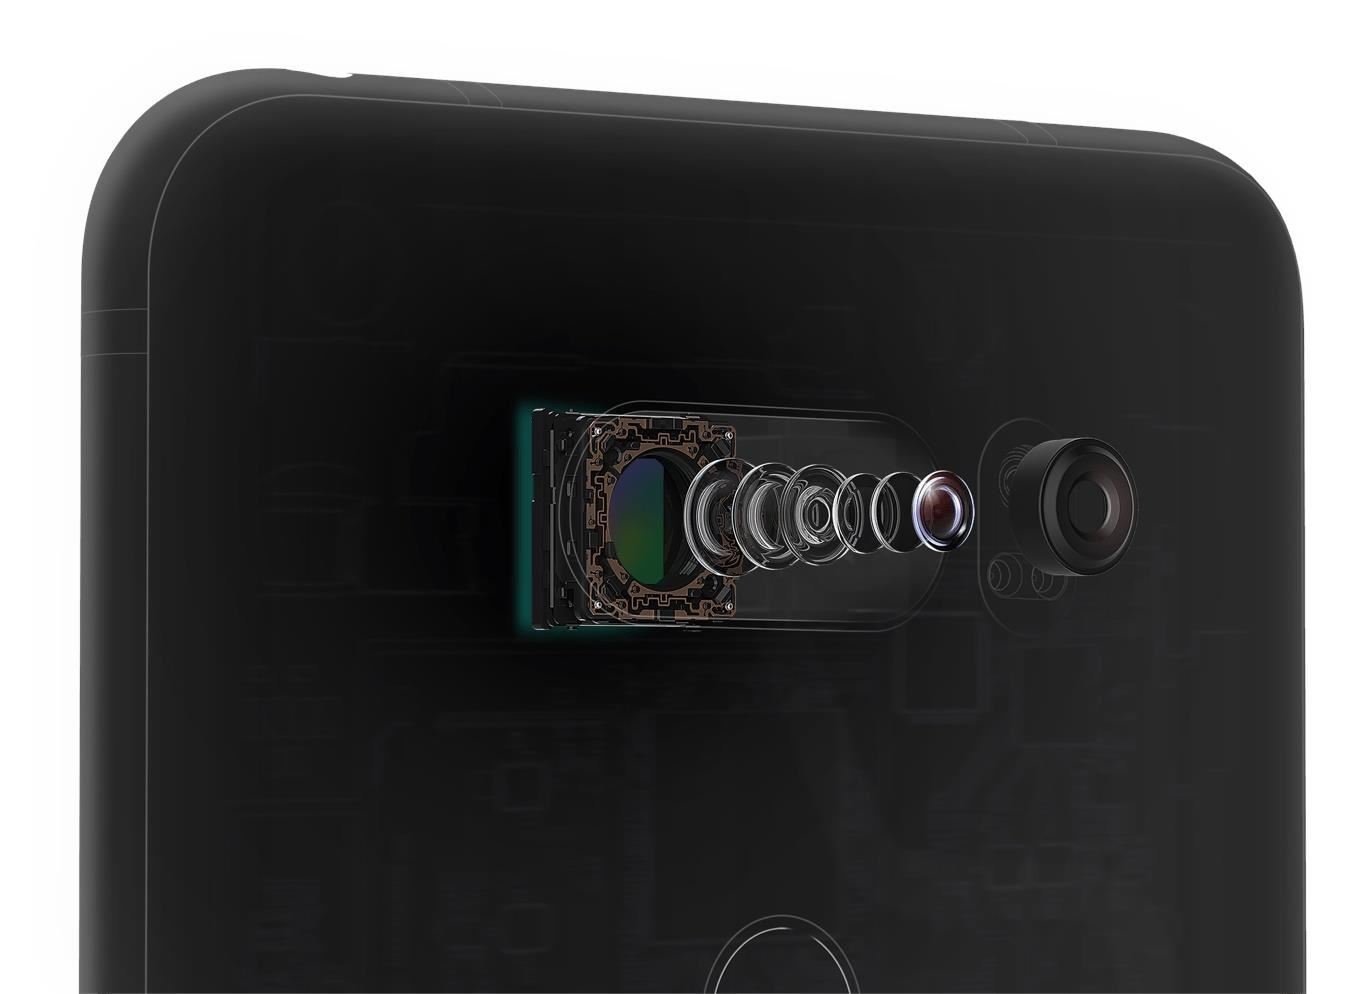 LG V30 Revealed — Dedicated DAC, Dual Back Cameras, Snapdragon 835 Processor & More